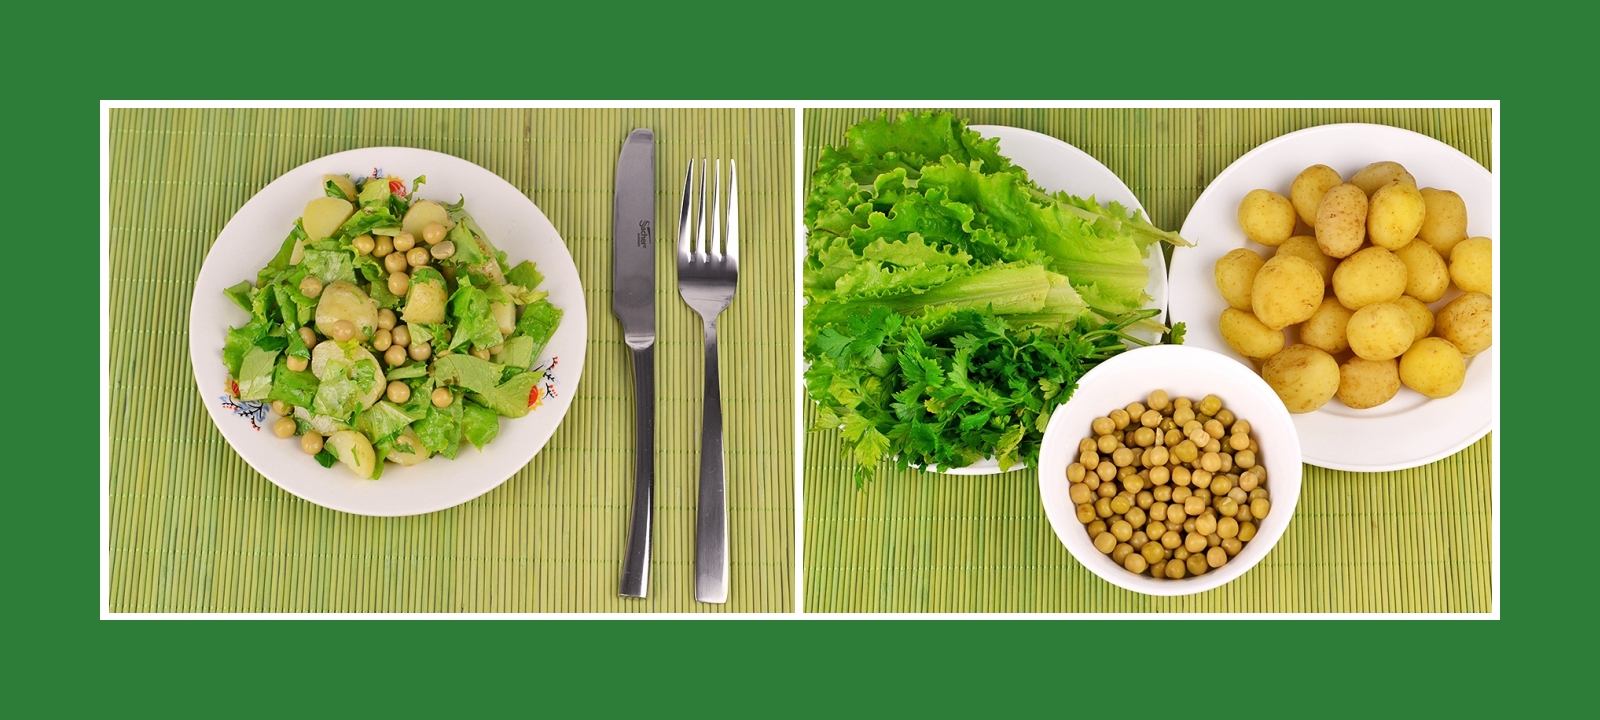 Salat oder Grillbeilage aus Kartoffeln, Gartensalat, Petersilie und Erbsen